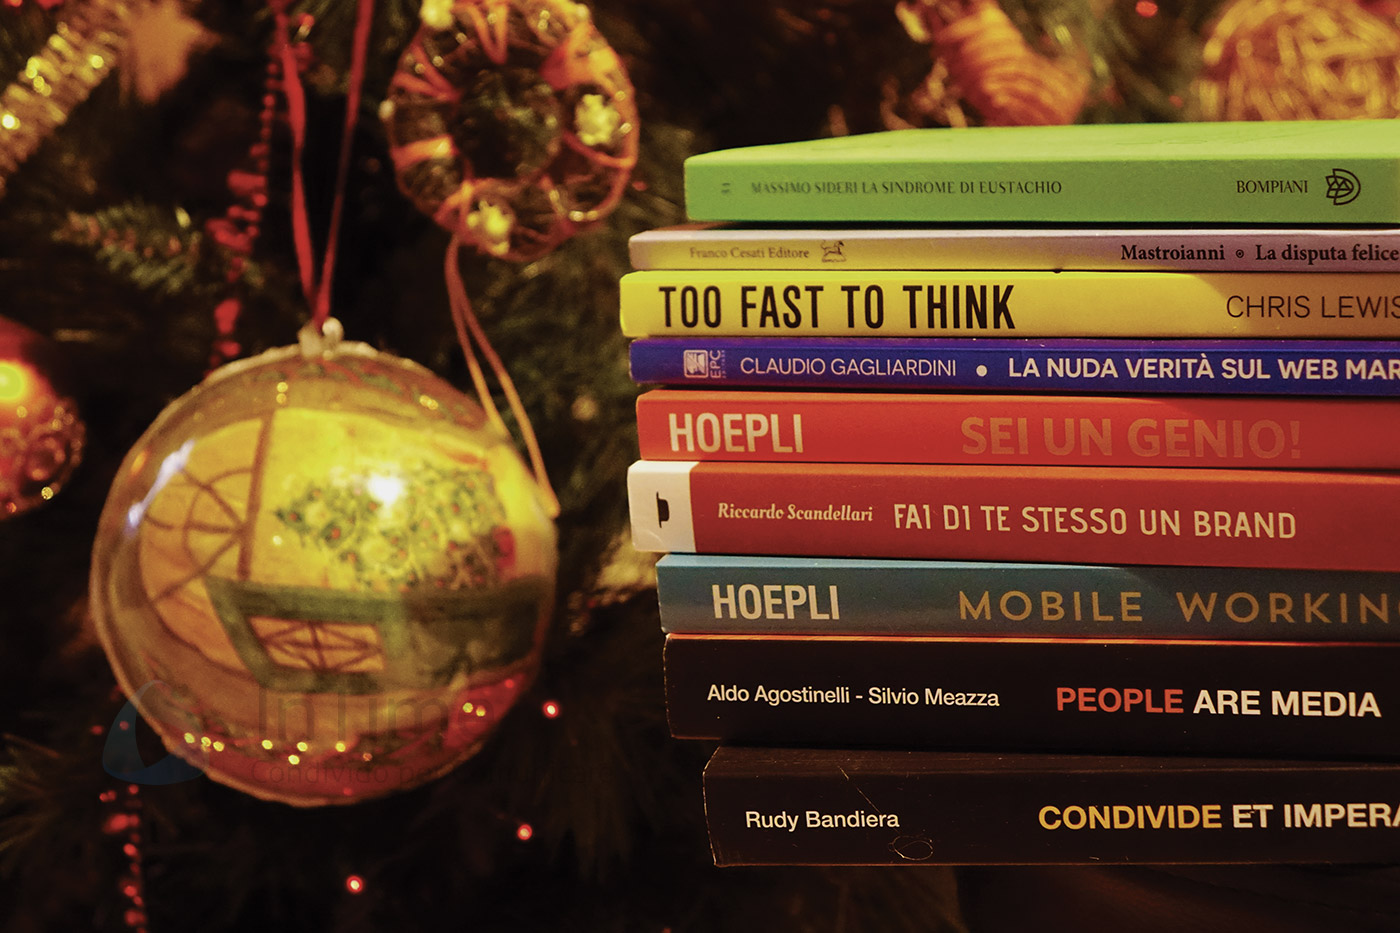 Testo Regali Di Natale.Una Lista Di Libri Di Digital Marketing Startup E Innovazione Da Regalare Anche A Natale